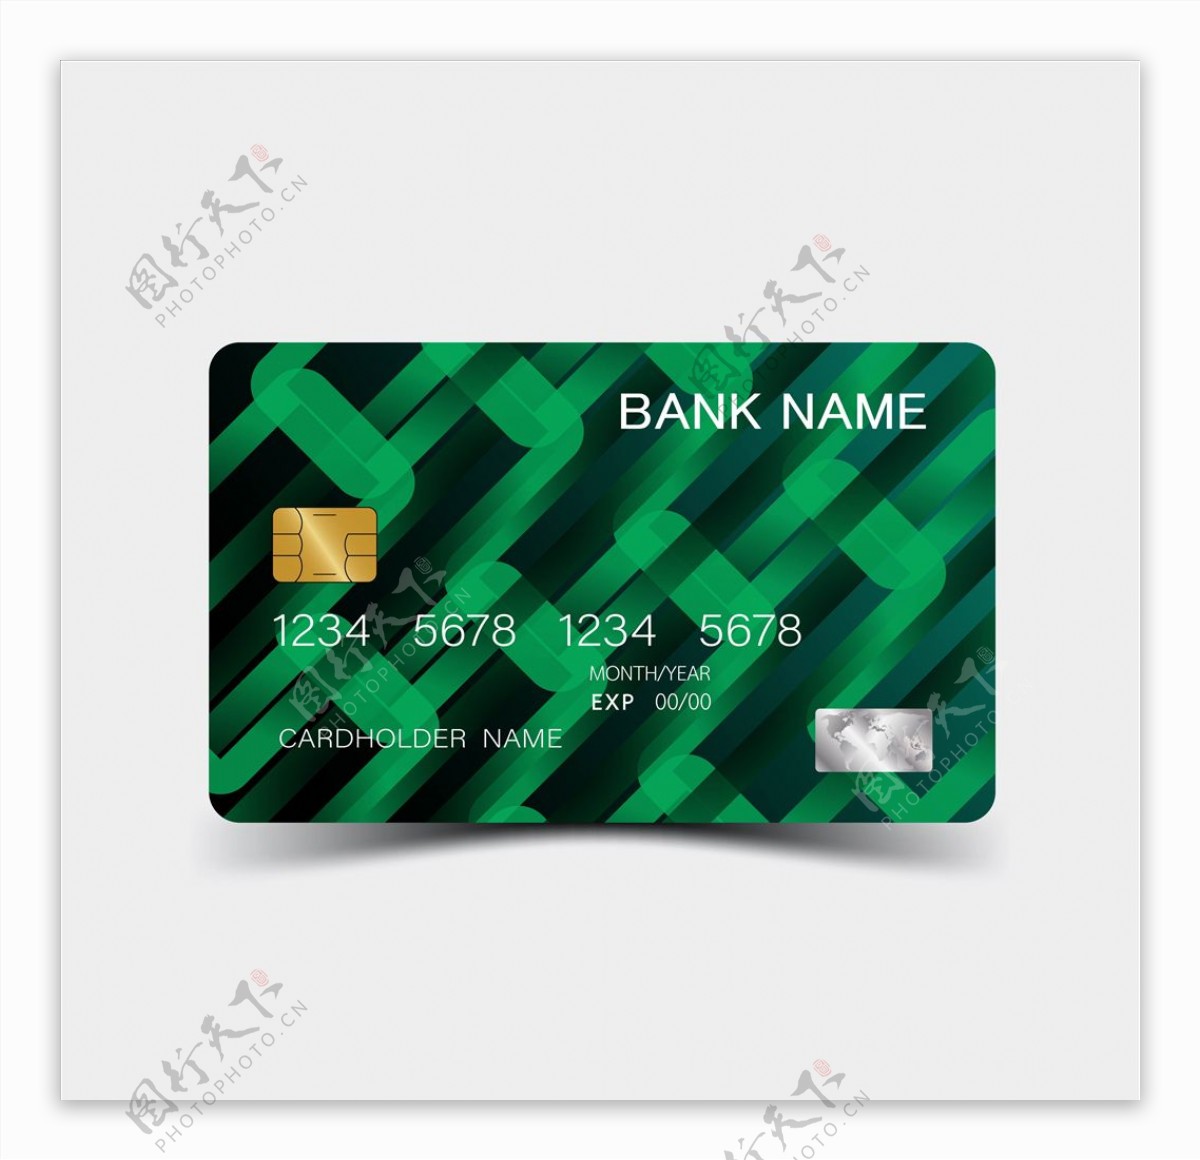 银行信用卡